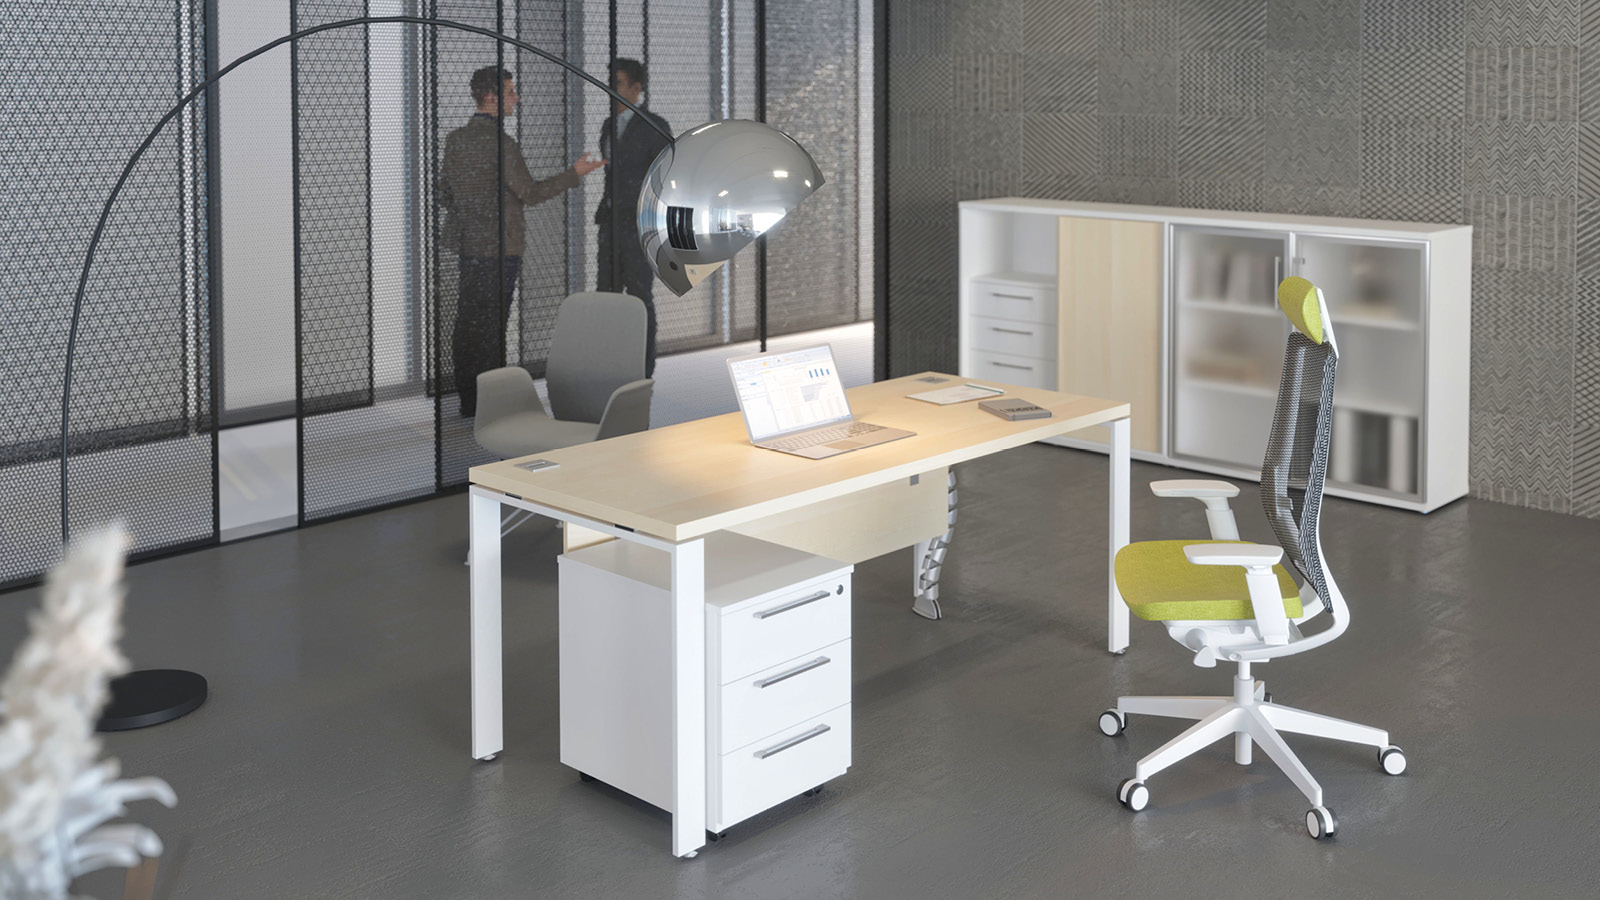 Wydzielona przestrzeń firmowa z biurkiem klonowym na białym stelażu. Obok - siatkowe krzesło obrotowe w pobliżu szafy. 